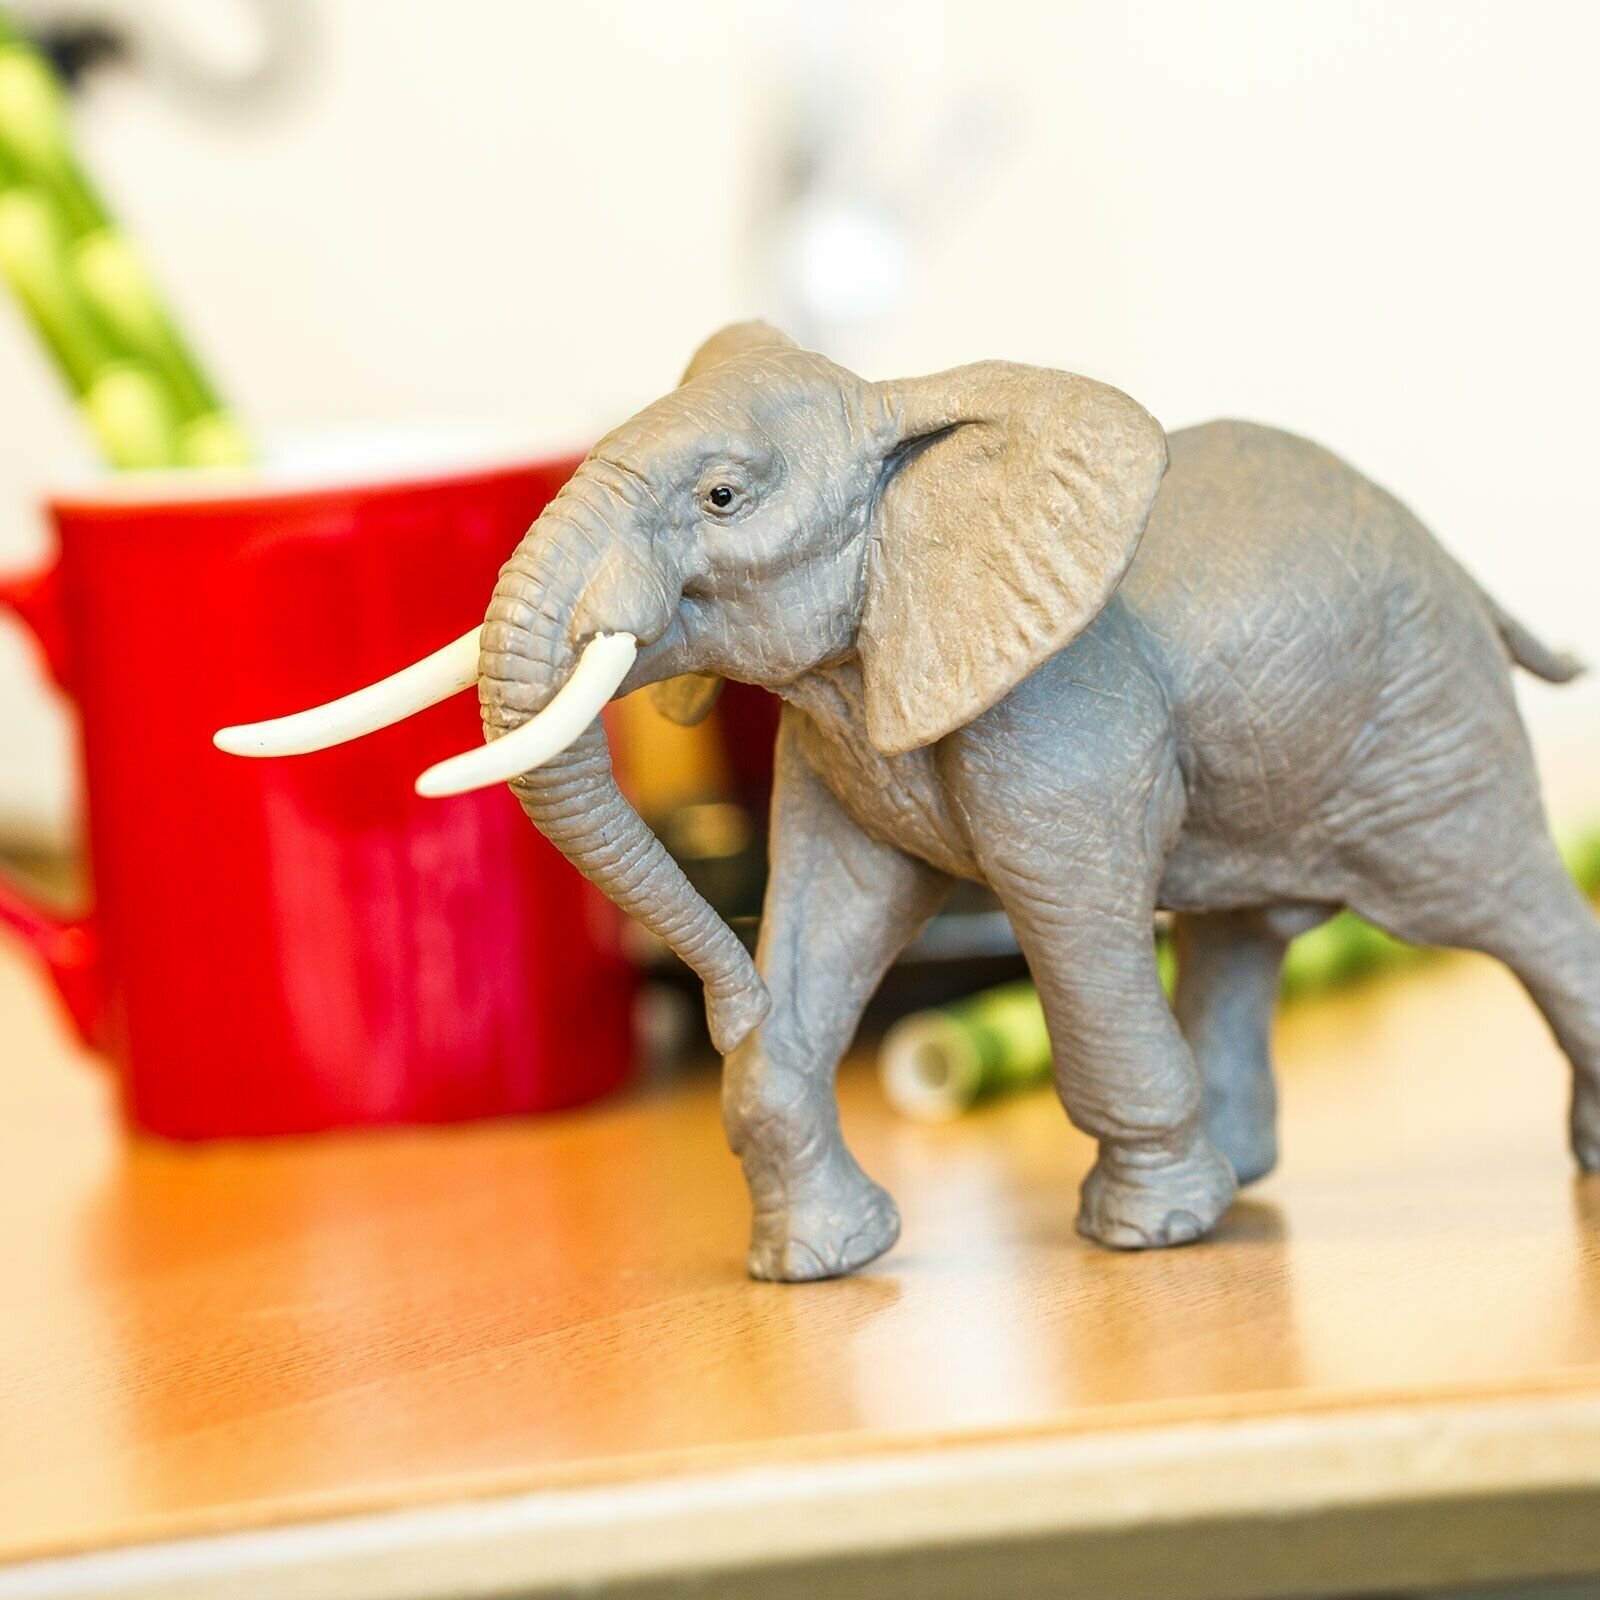 Фигурка животного Safari Ltd Африканский слон, для детей, игрушка коллекционная, 295629